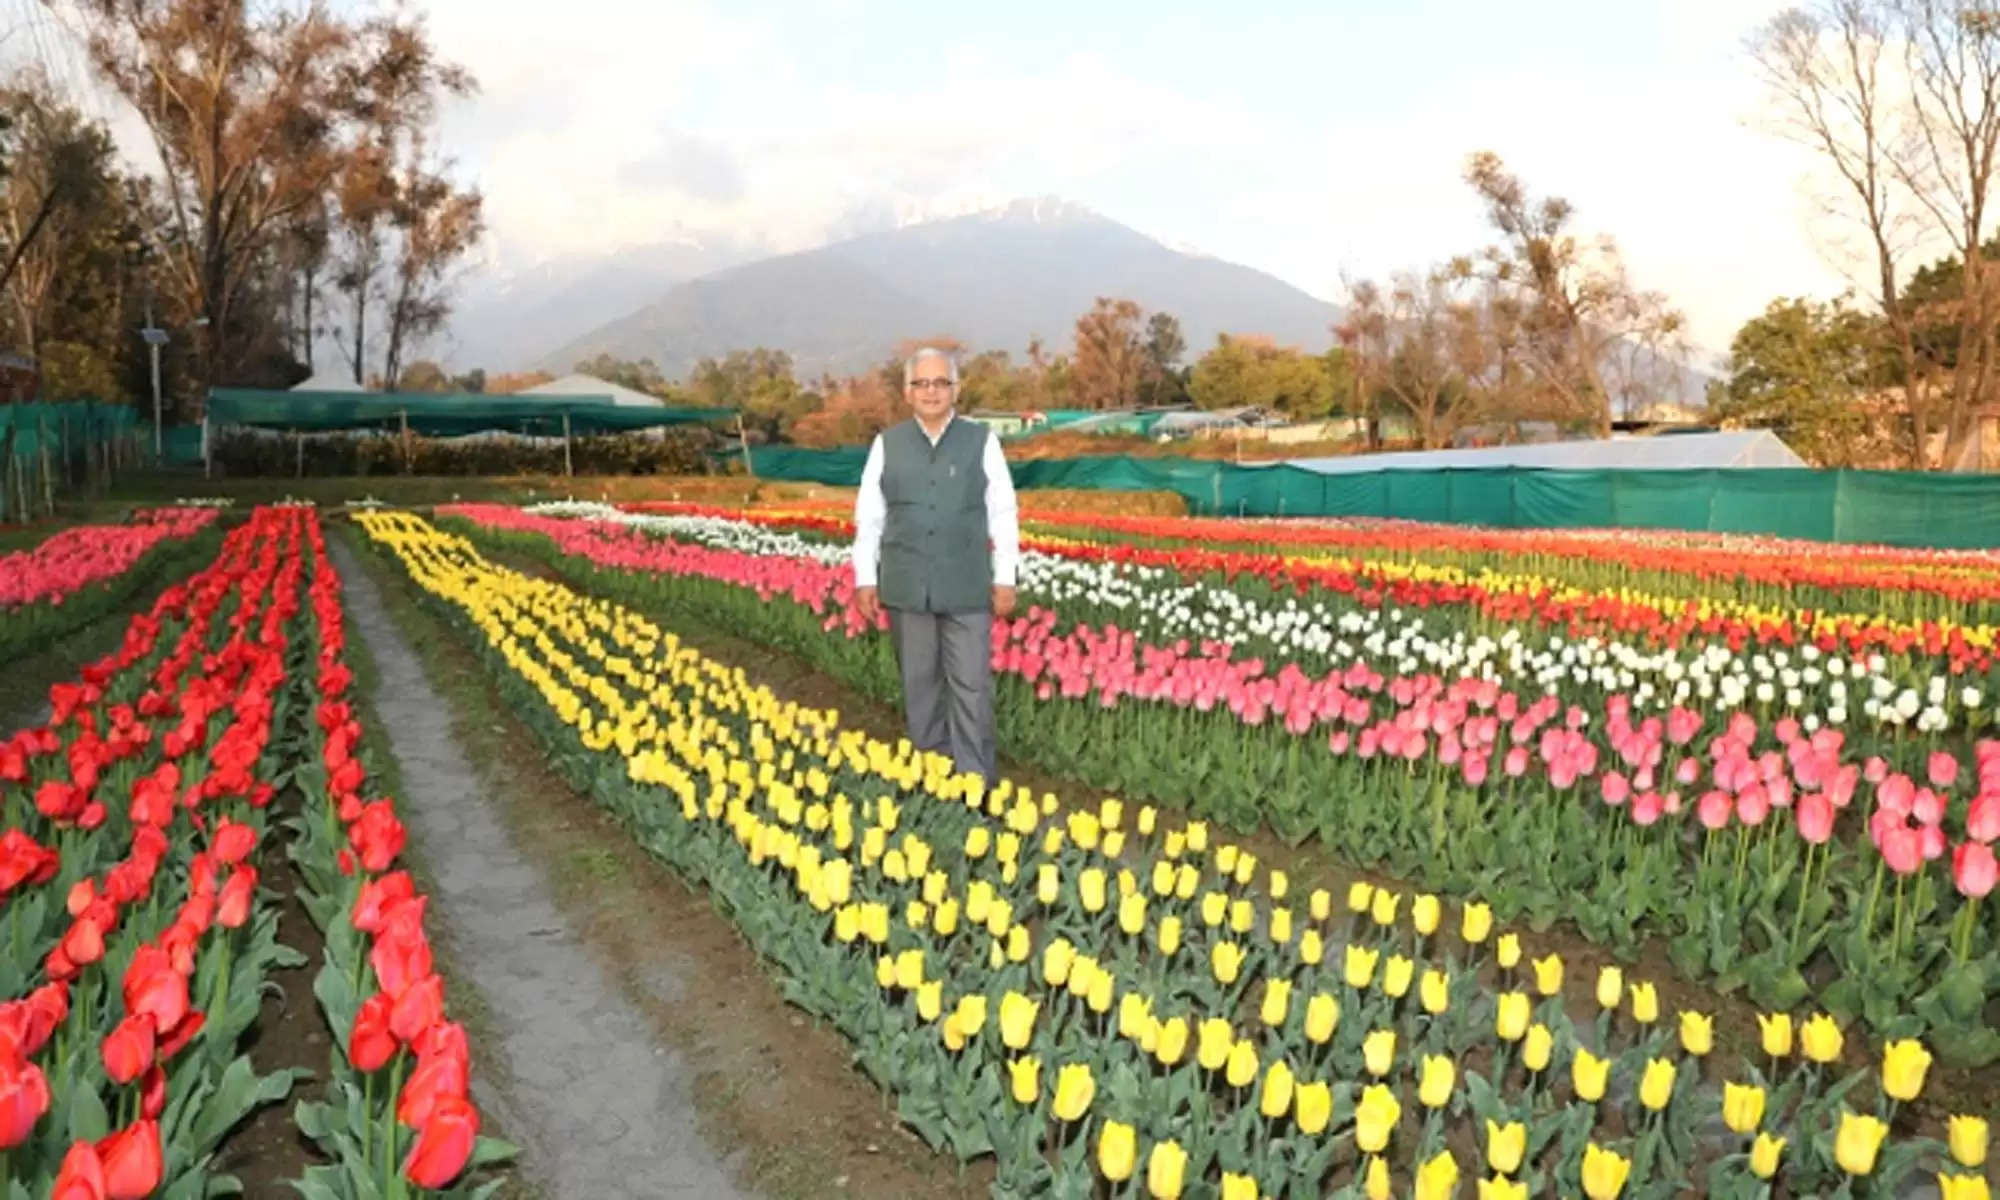 पालमपुर में ट्यूलिप गार्डन (Tulip Garden Of Palampur) की सुंदरता को निहारने के लिए बड़ी संख्या में स्वदेशी पर्यटक इन दिनों पालमपुर पहुंचने रहे हैं। कश्मीर के बाद पालमपुर में देश का दूसरा ट्यूलिप गार्डन इंस्टीट्यूट ऑफ हिमालयन बायोरिसोर्स टेक्नोलॉजी (CSIR IHBT) द्वारा विकसित किया गया है। यह ट्यूलिप गार्डन (Tulip Garden Of Palampur) पूरी तरह से स्वदेशी ट्यूलिप पौधों से विकसित किया गया है।  Tulip Garden Of Palampur | IHBT Planted 50 Thousand Saplings 11 Varieties | Himachal Palampur | Tulip Garden News | Kashmir Tulip Garden